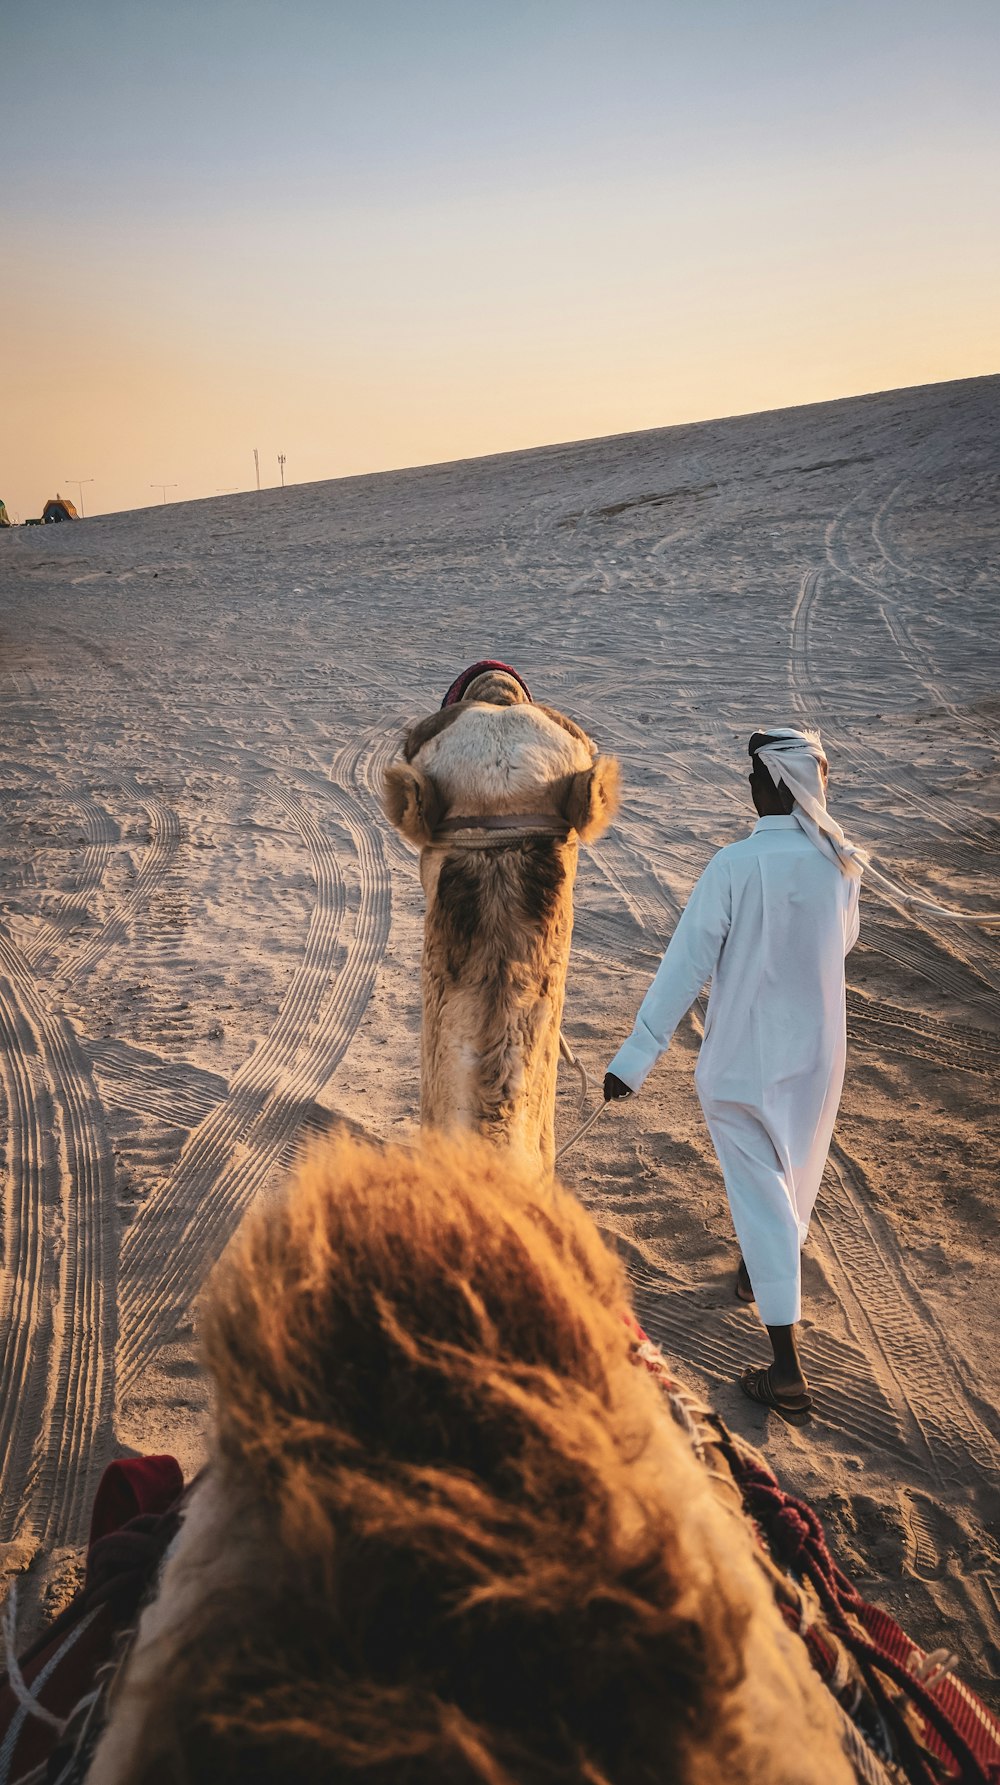 homem no manto branco de pé ao lado do camelo marrom durante o dia